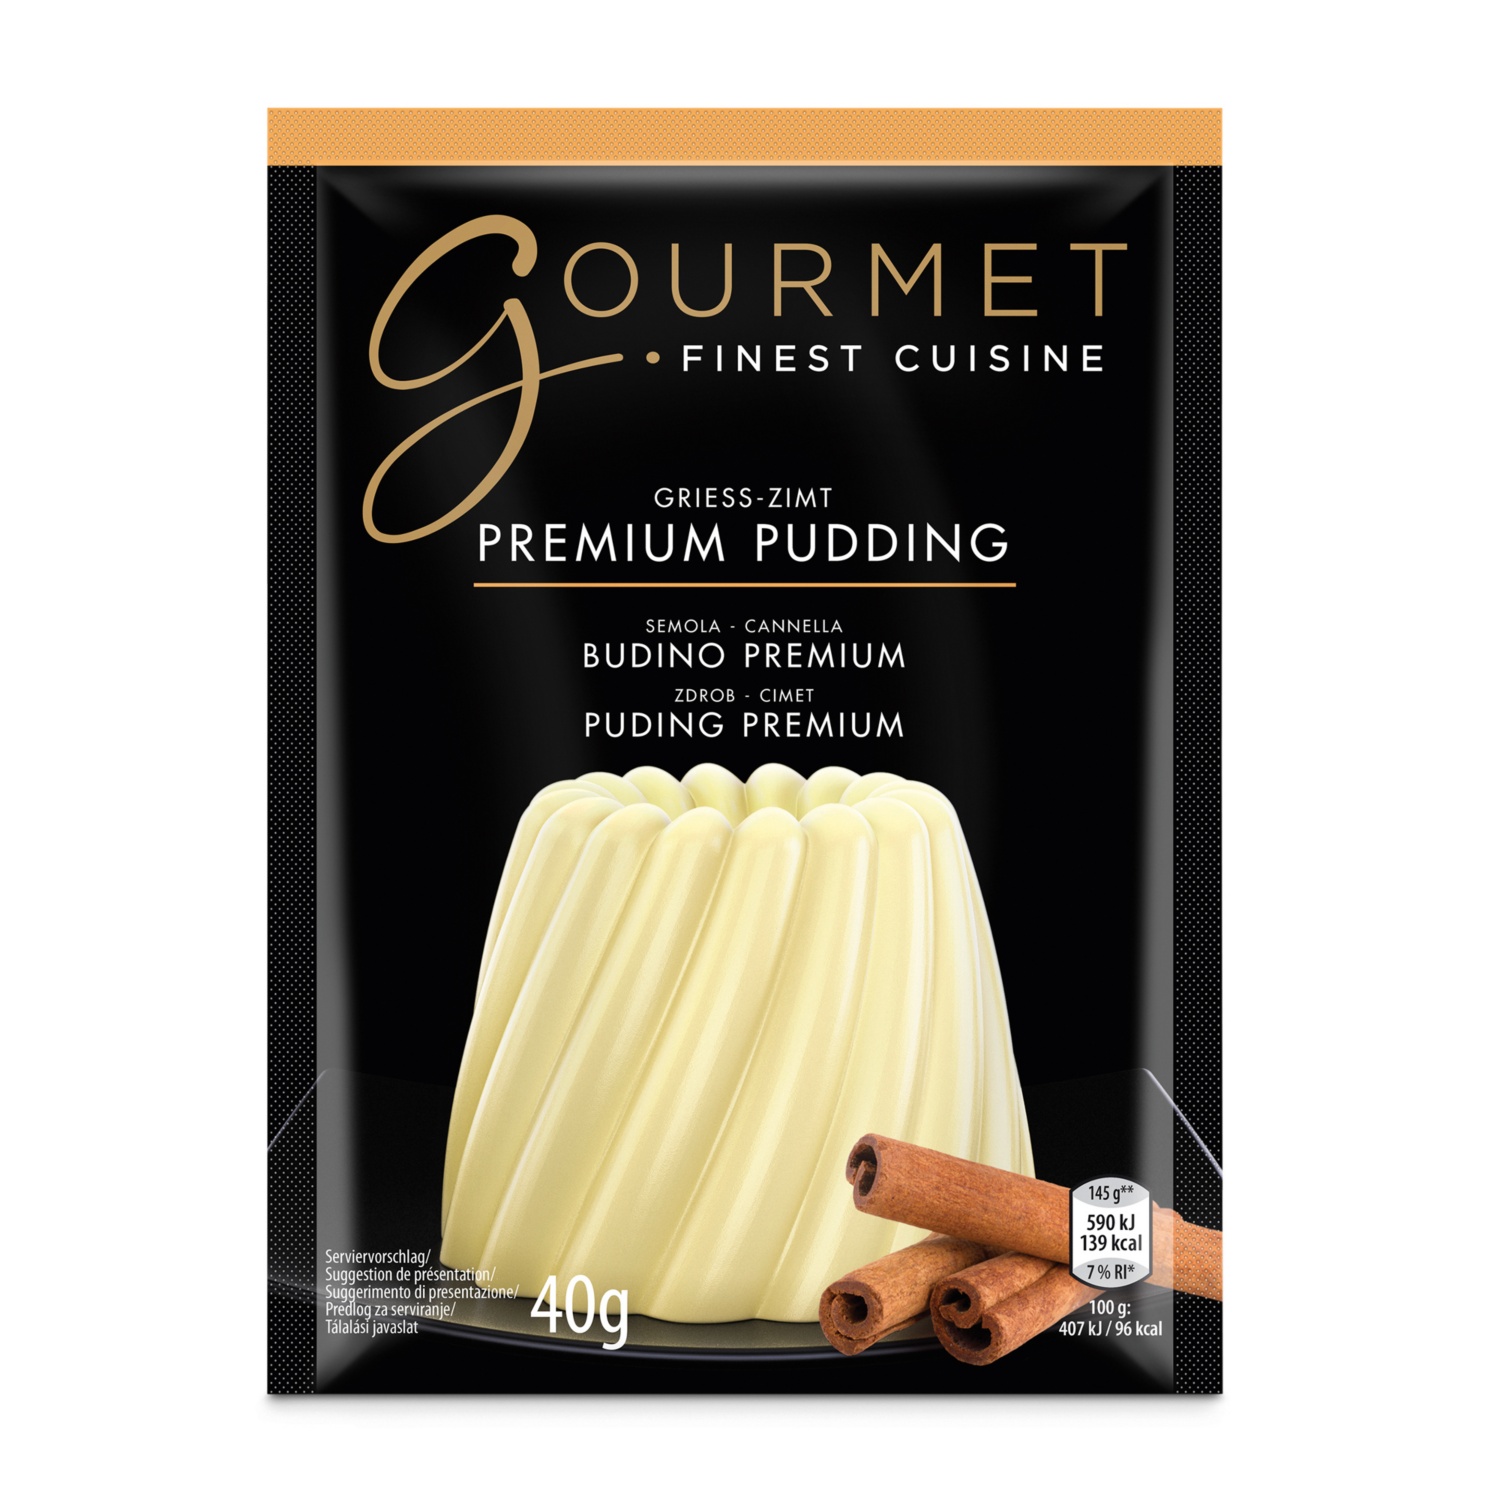 GOURMET Pudding, Grieß-Zimt